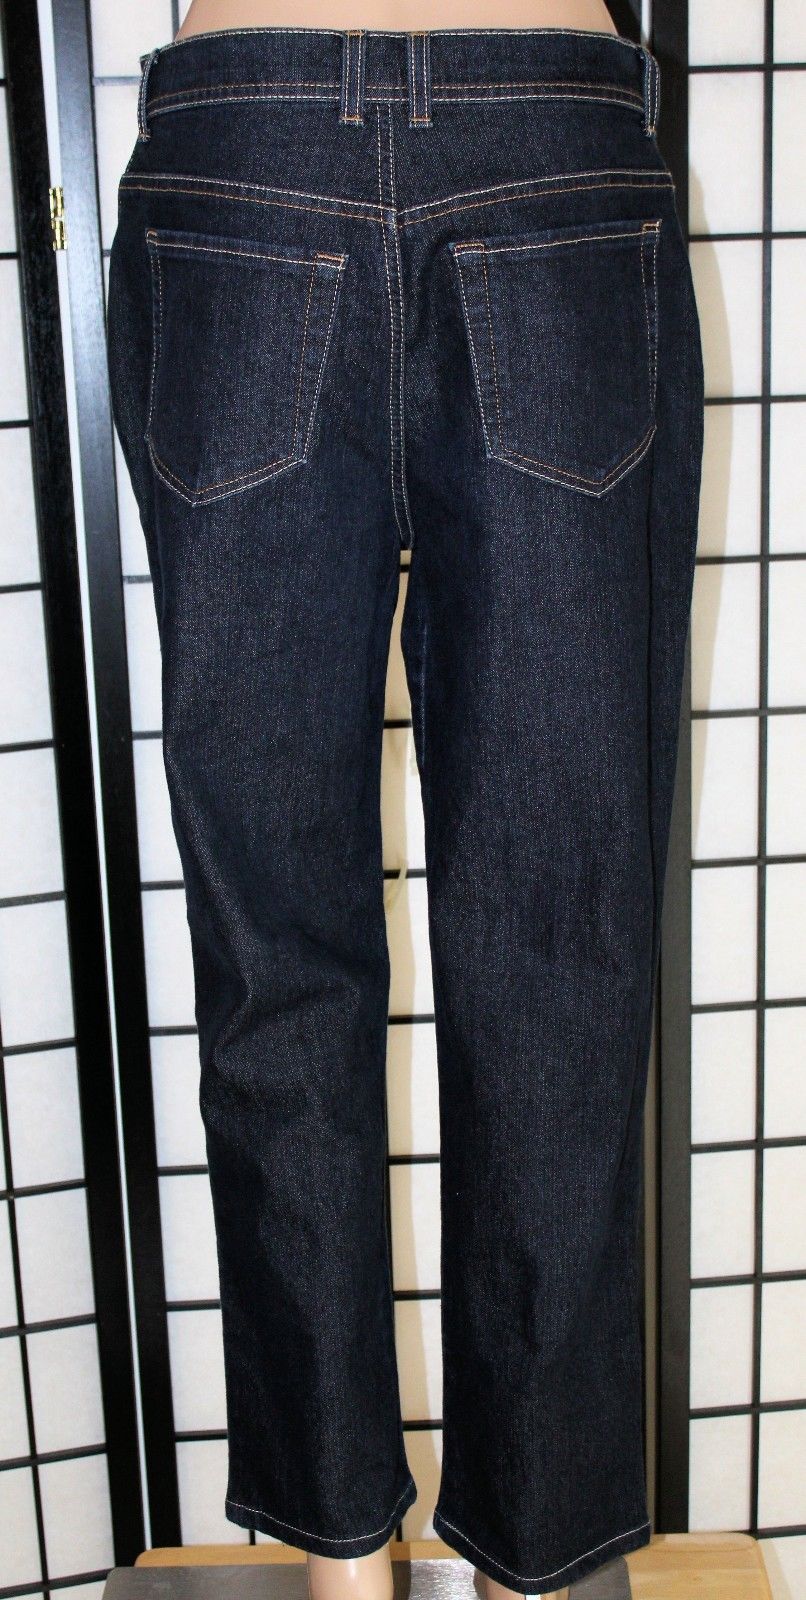 GLORIA VANDERBILT AMANDA Women's Size 8 Dark Wash Stretch Jeans 27" Inseam EUC - $26.11